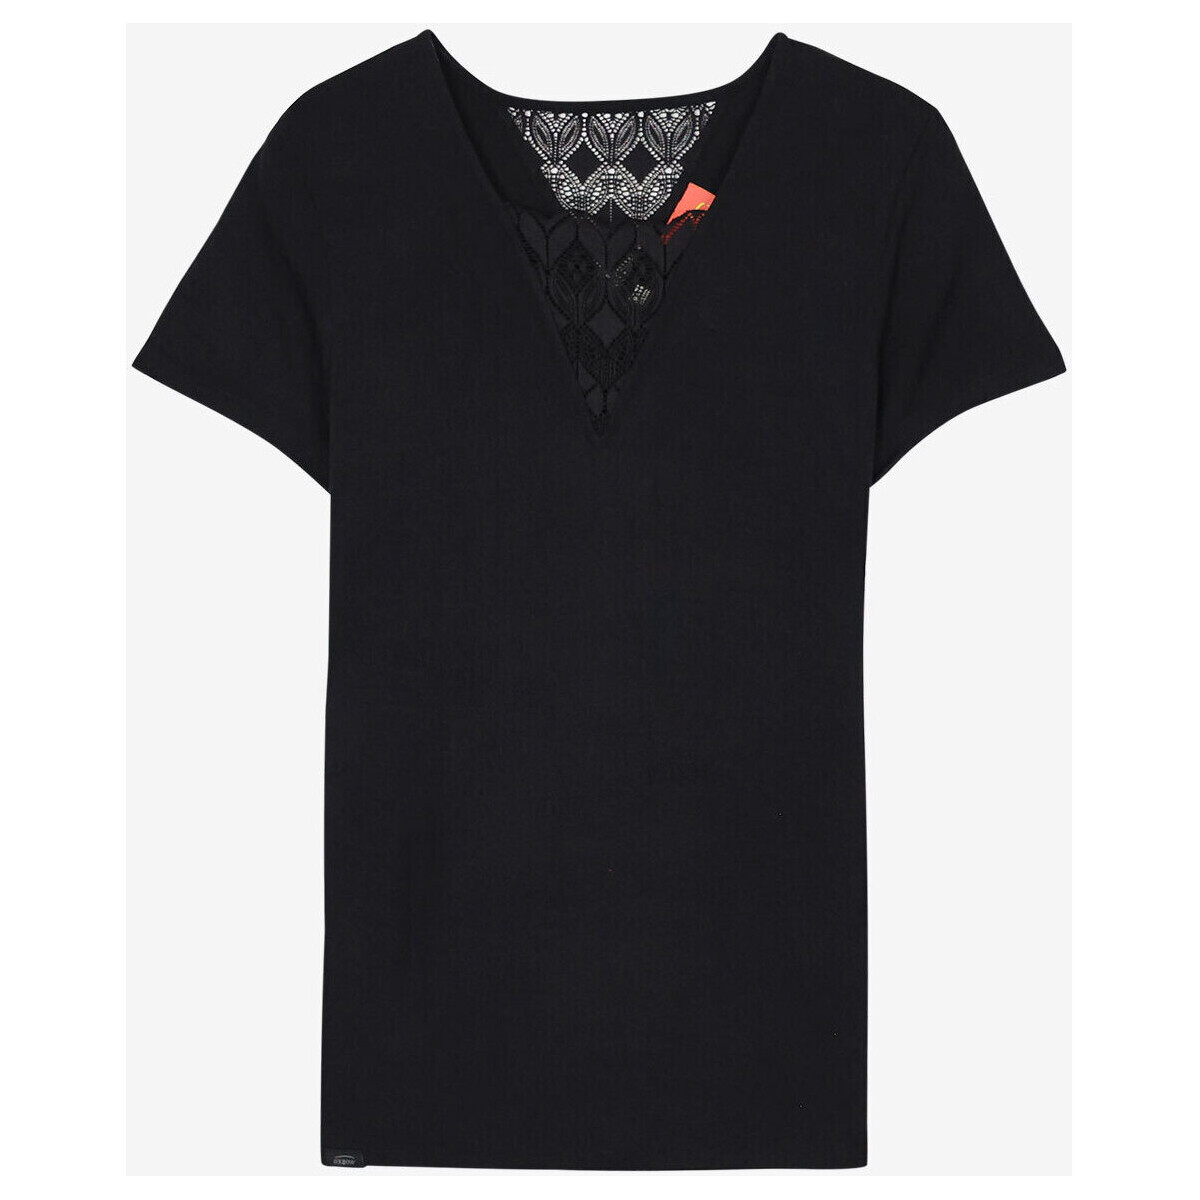 Vêtements Femme T-shirts manches courtes Oxbow Top fluide empiècement dentelle P2TIA Noir